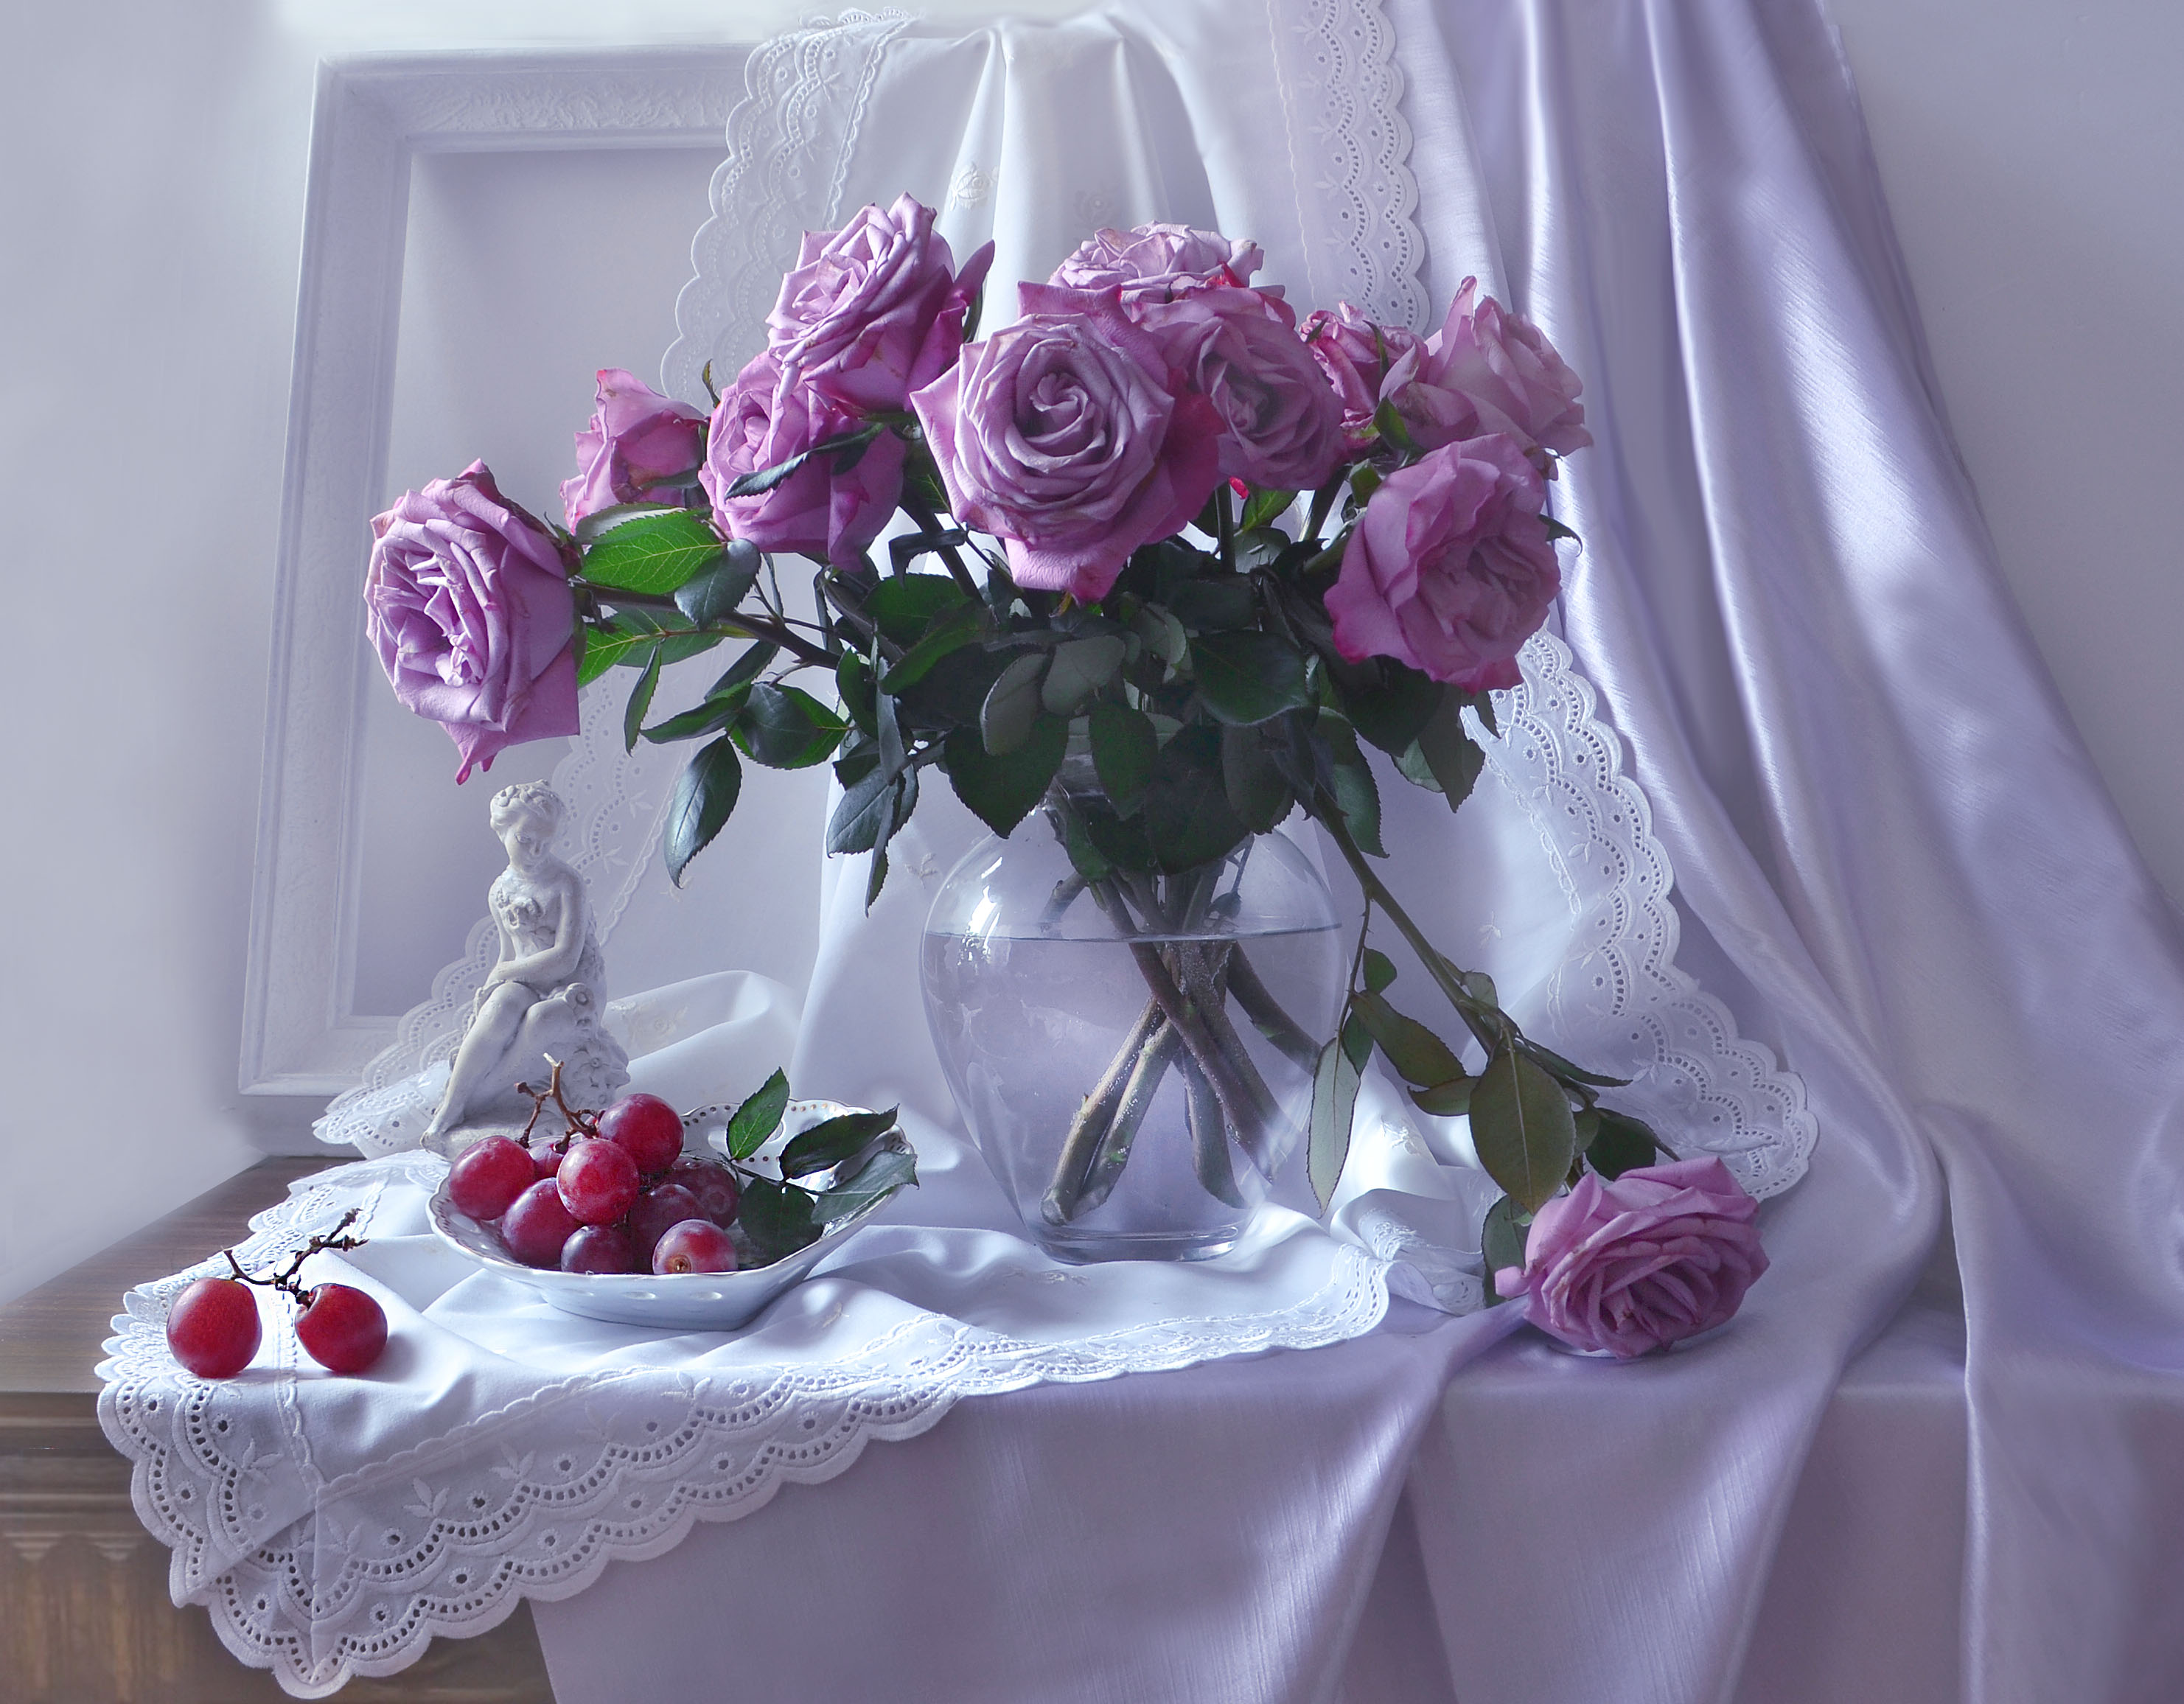 免费照片桌上摆放着透明花瓶中的紫色玫瑰